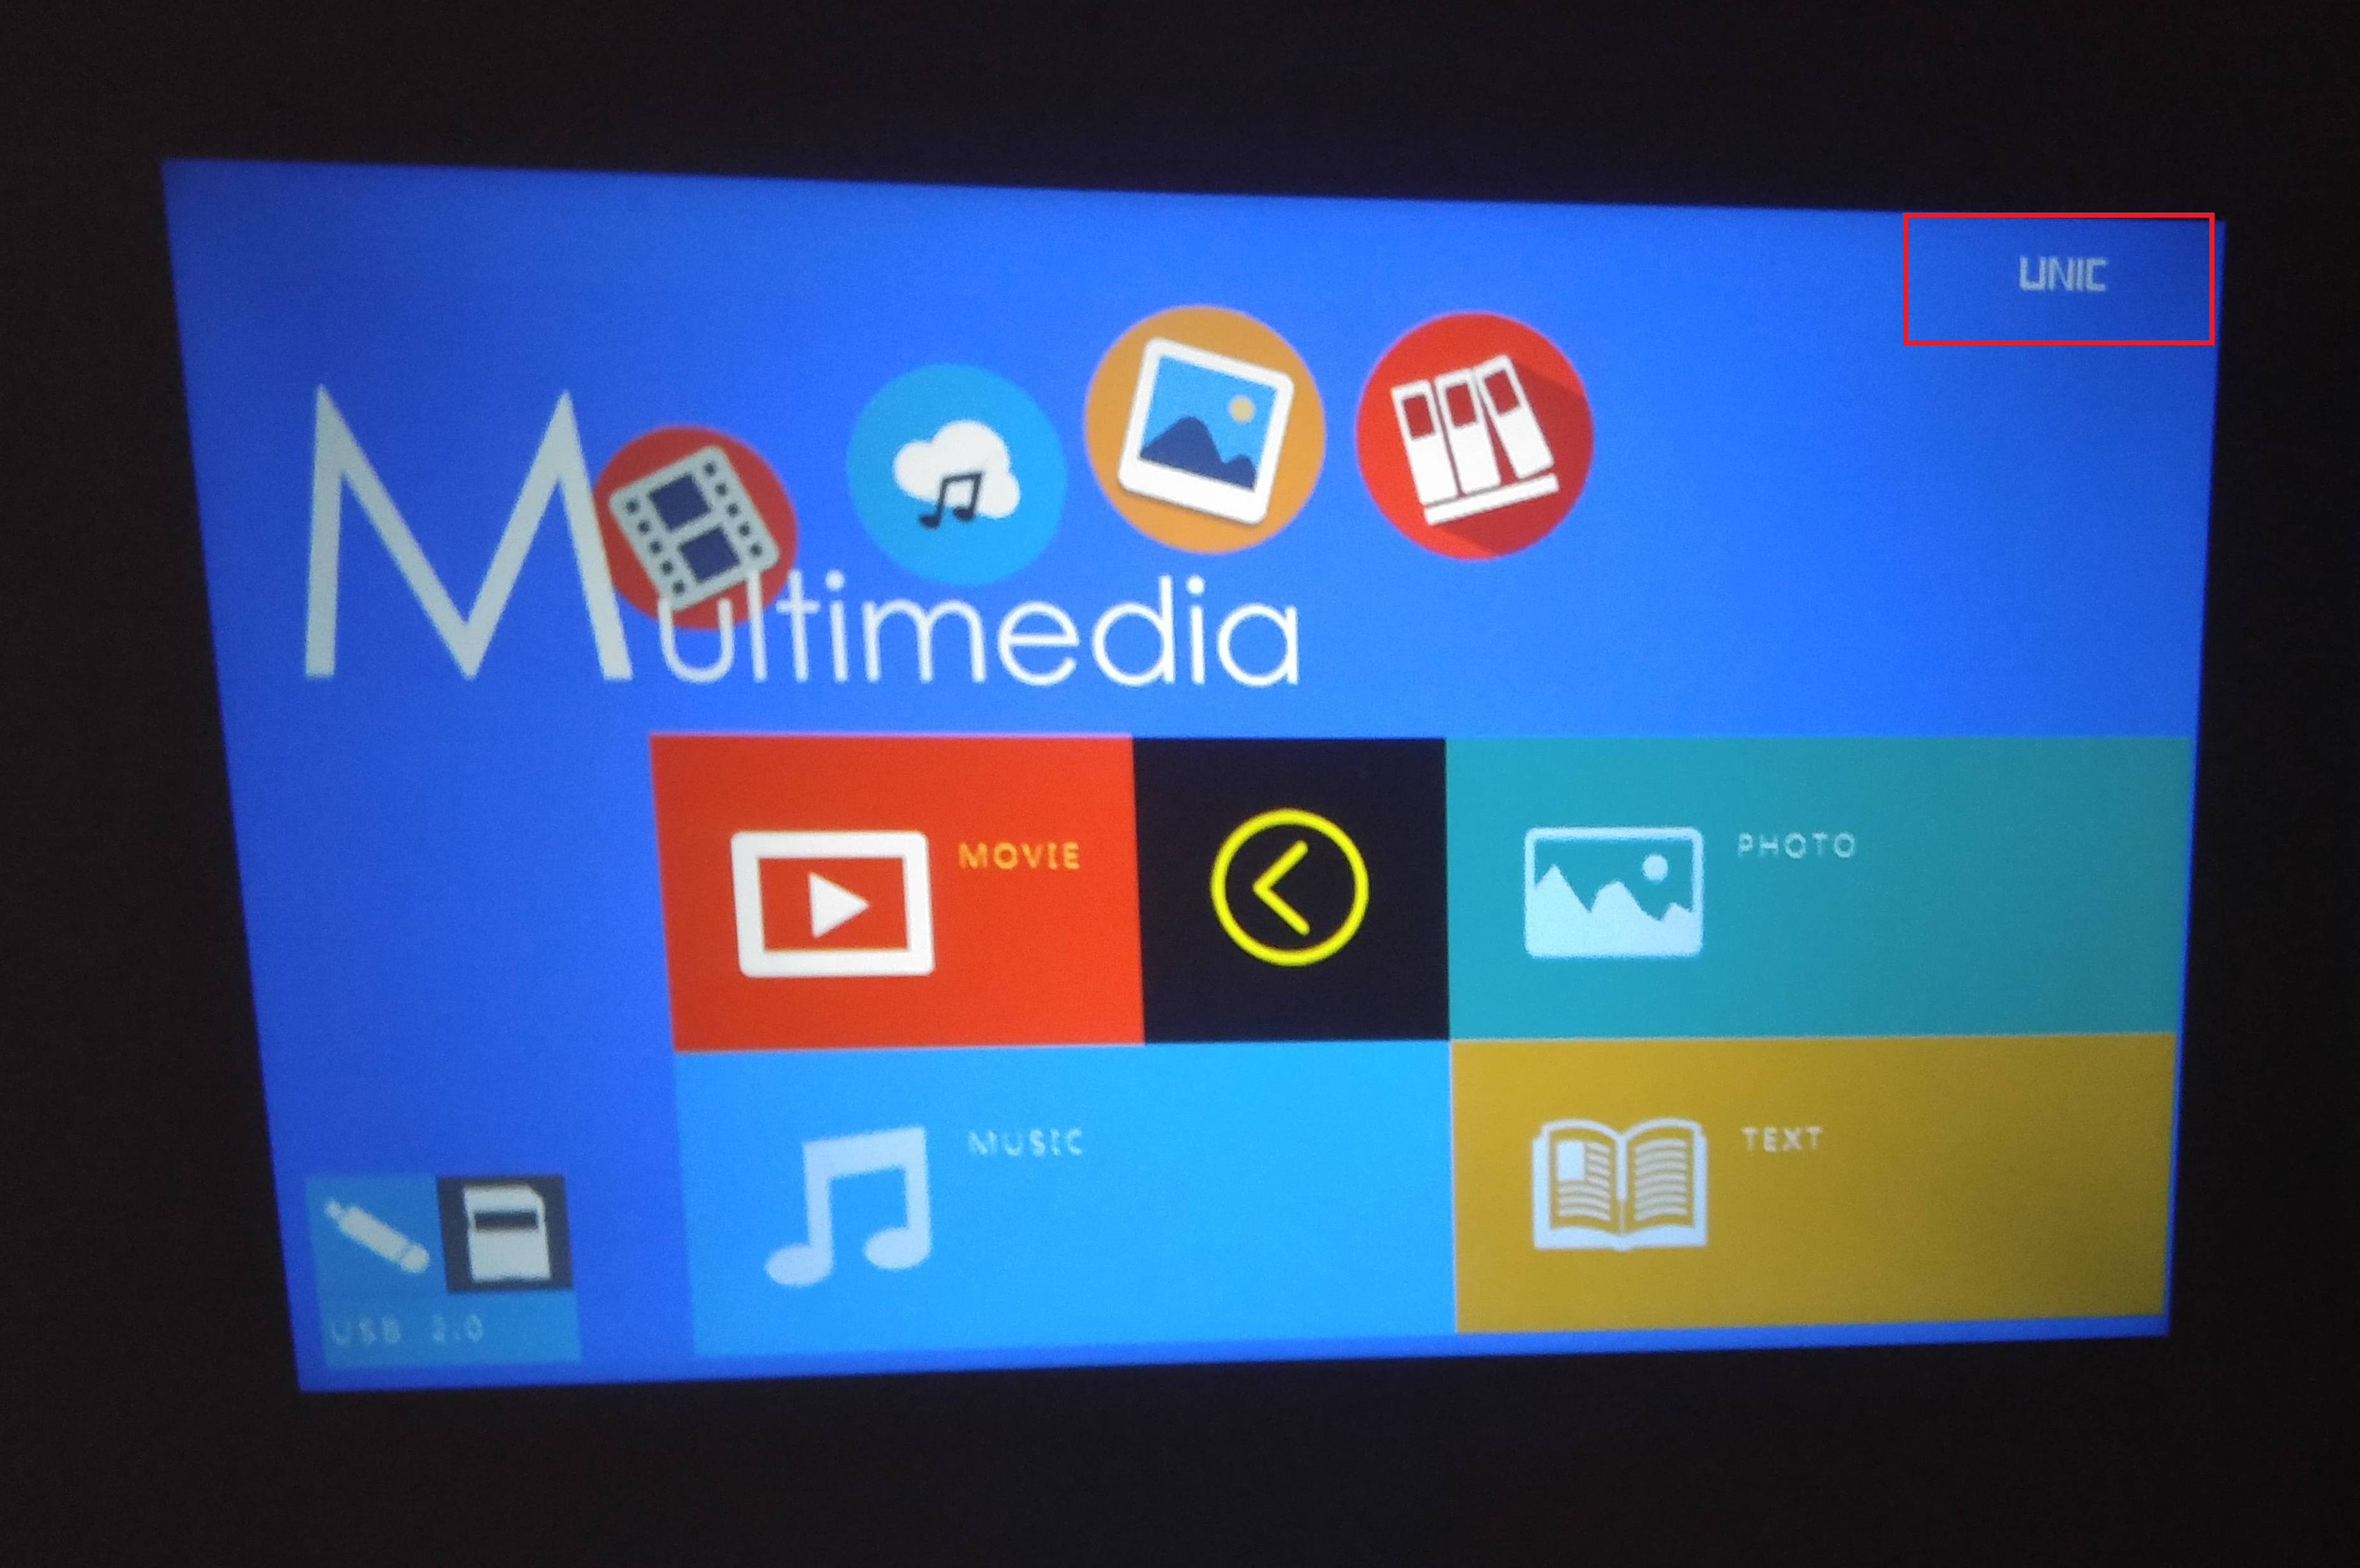 Качество изображения устройства и расположенный в верхней части экрана логотип